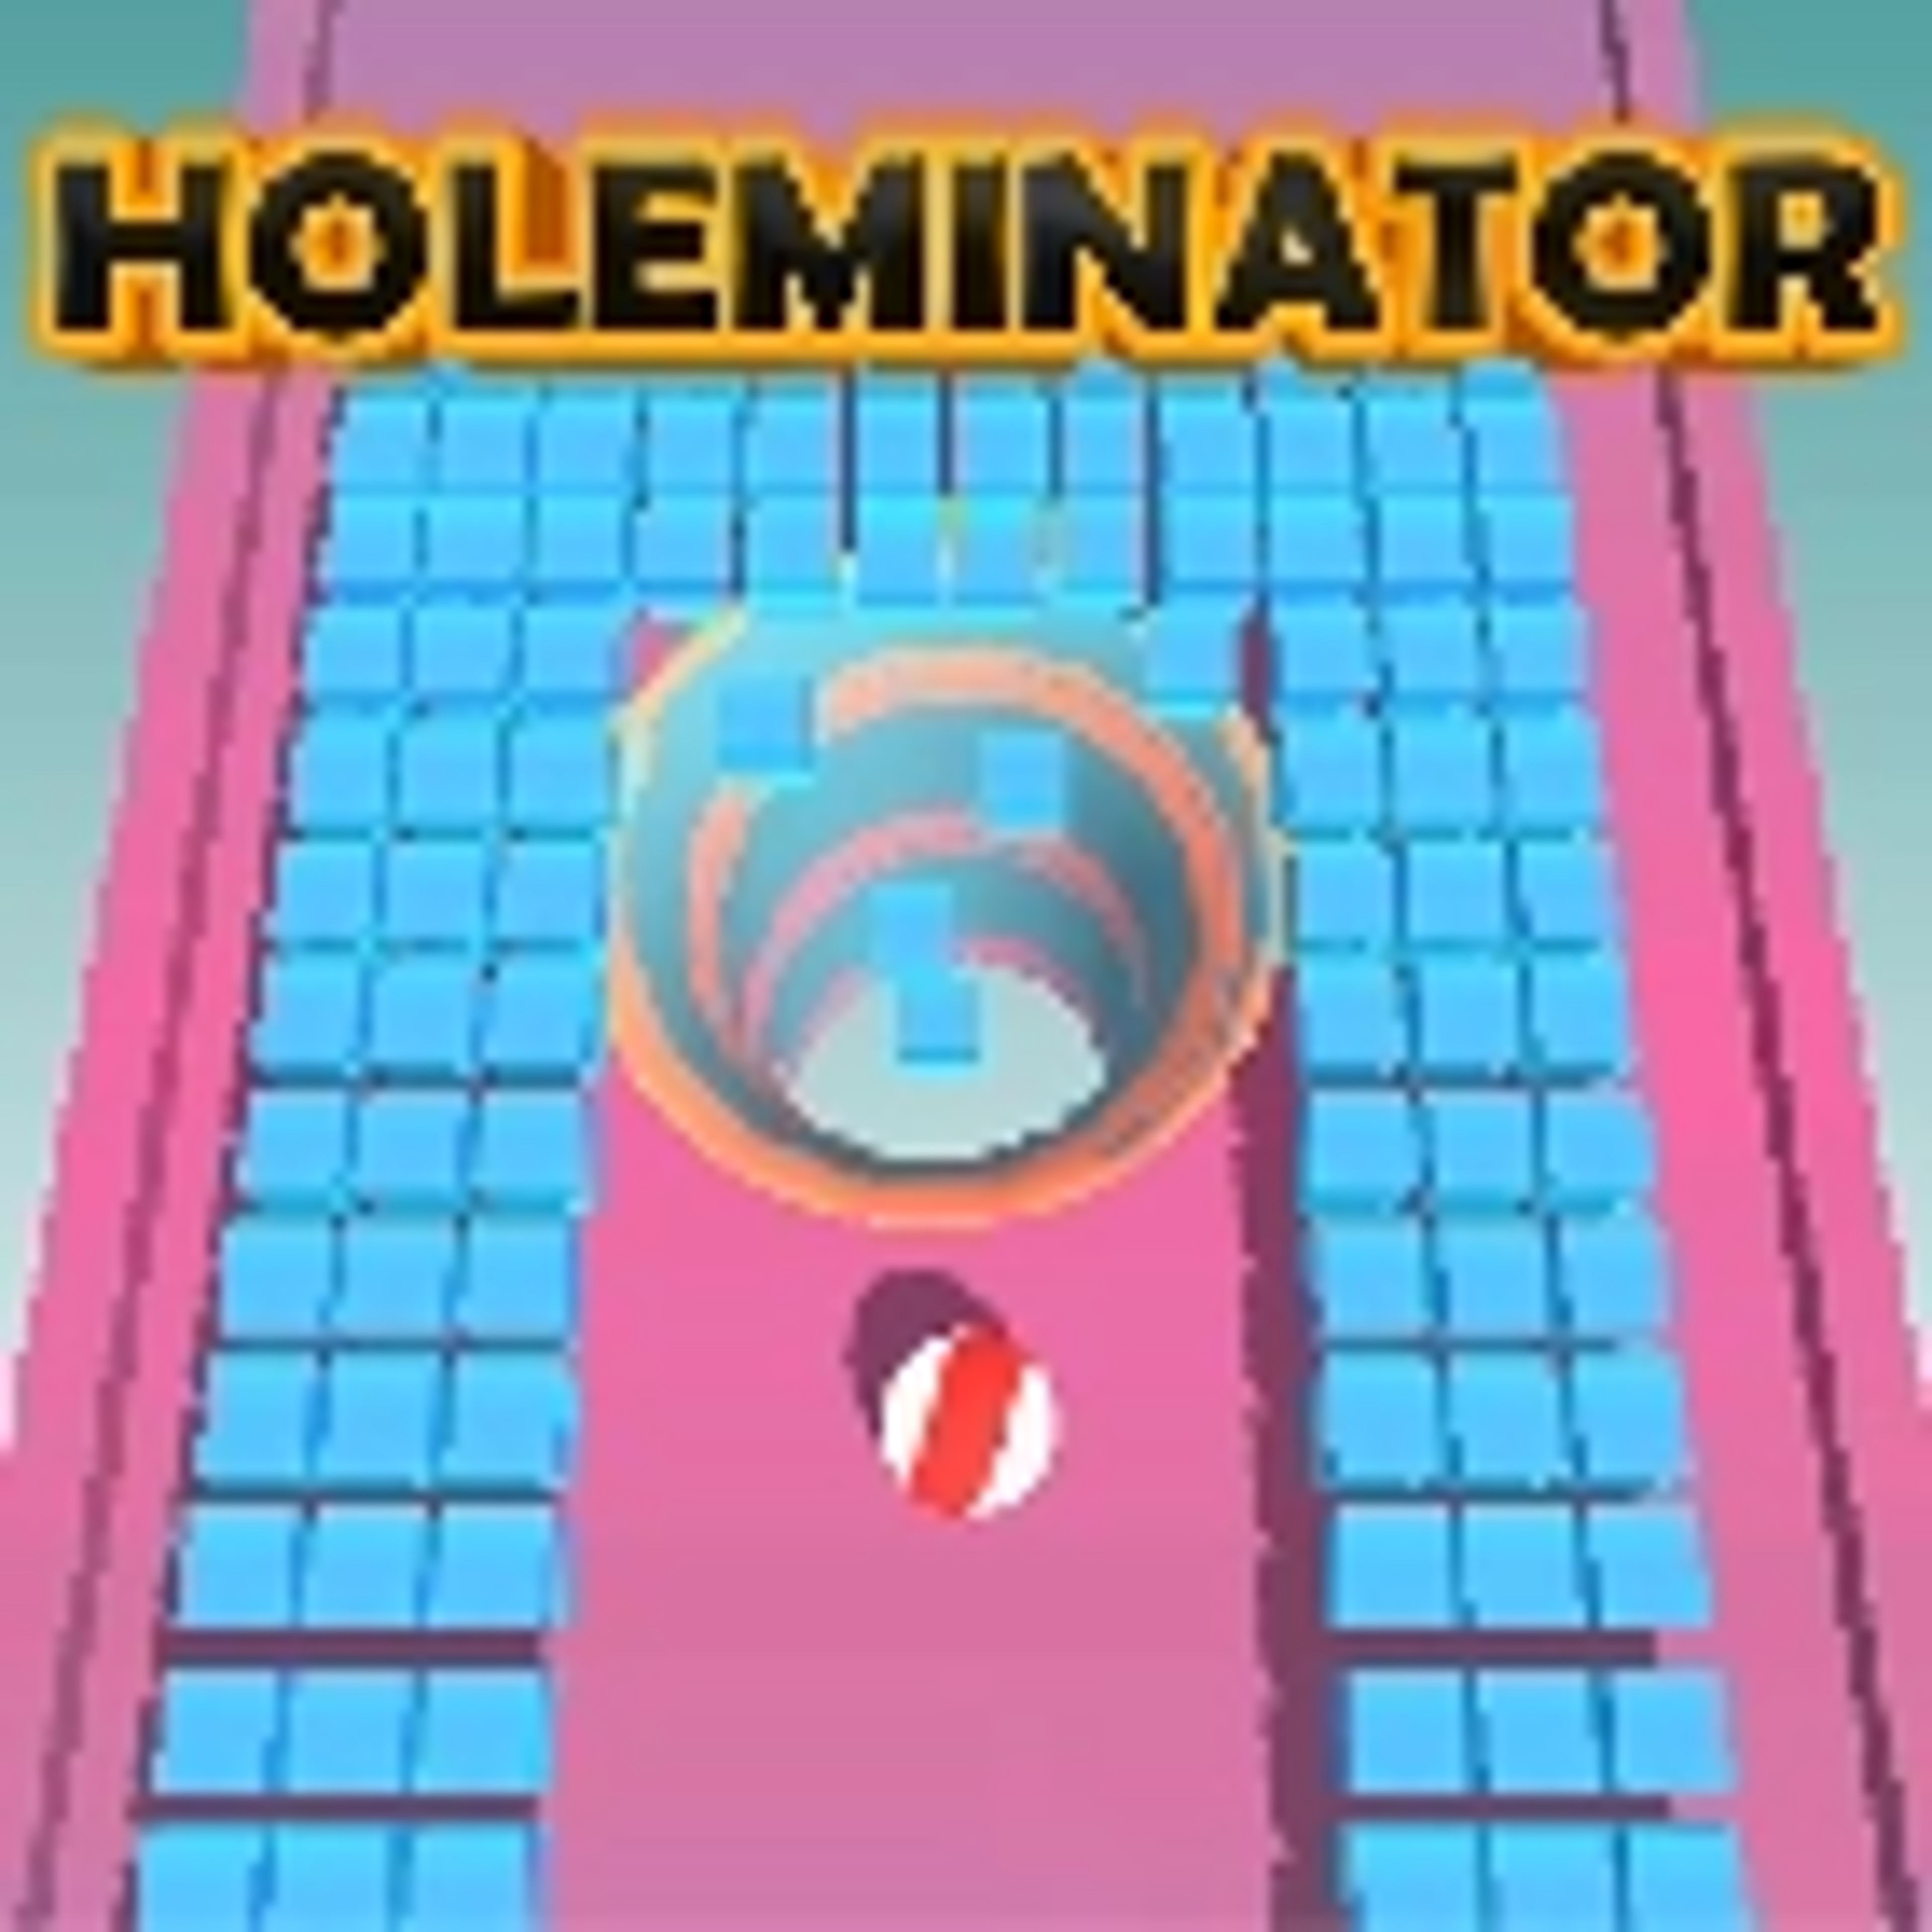 Holeminator